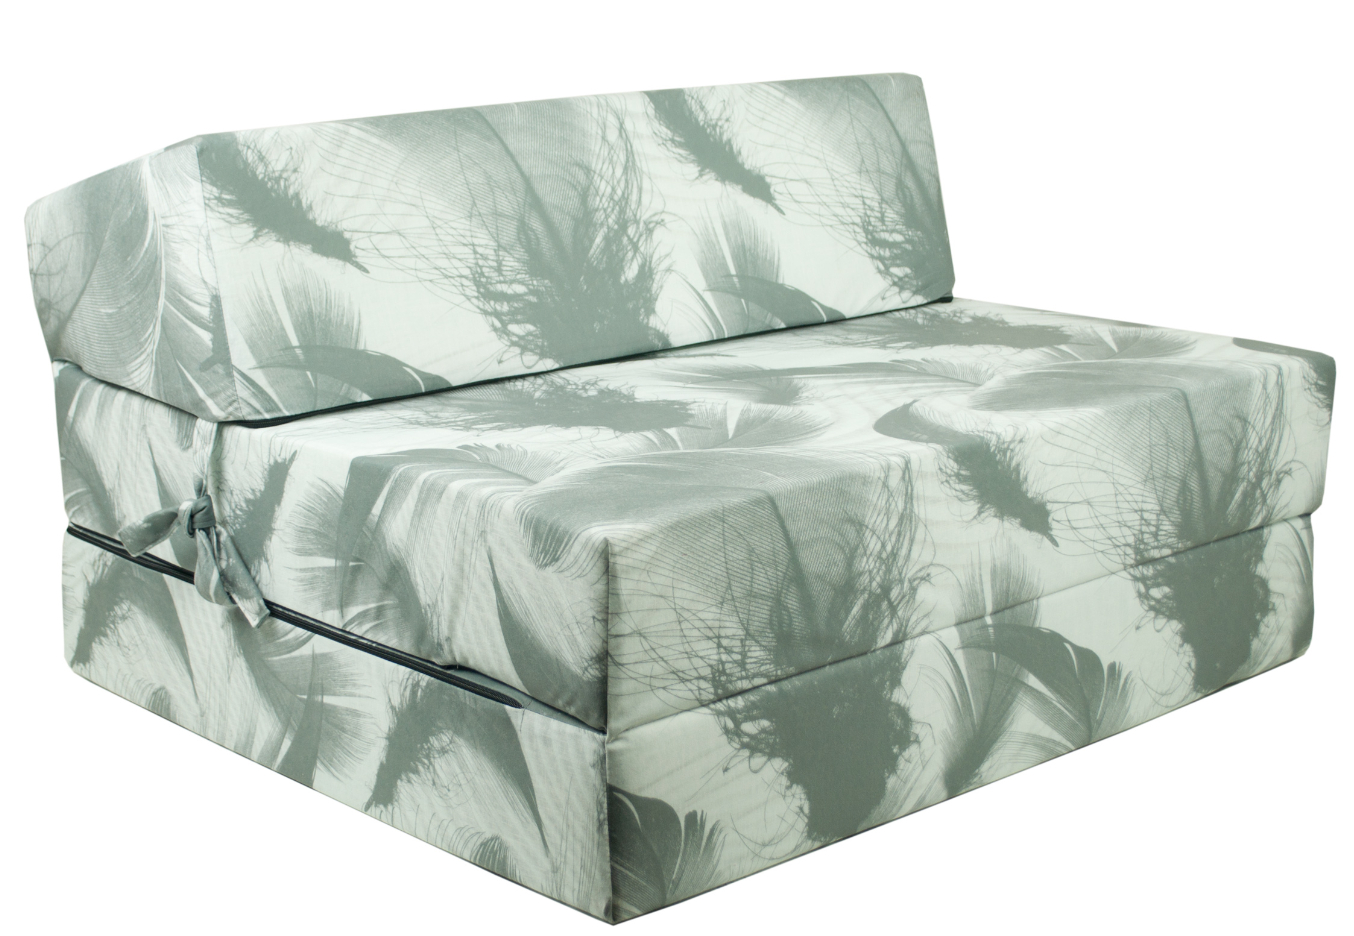 FI Folding mattress 200x90x15 cm - model 02